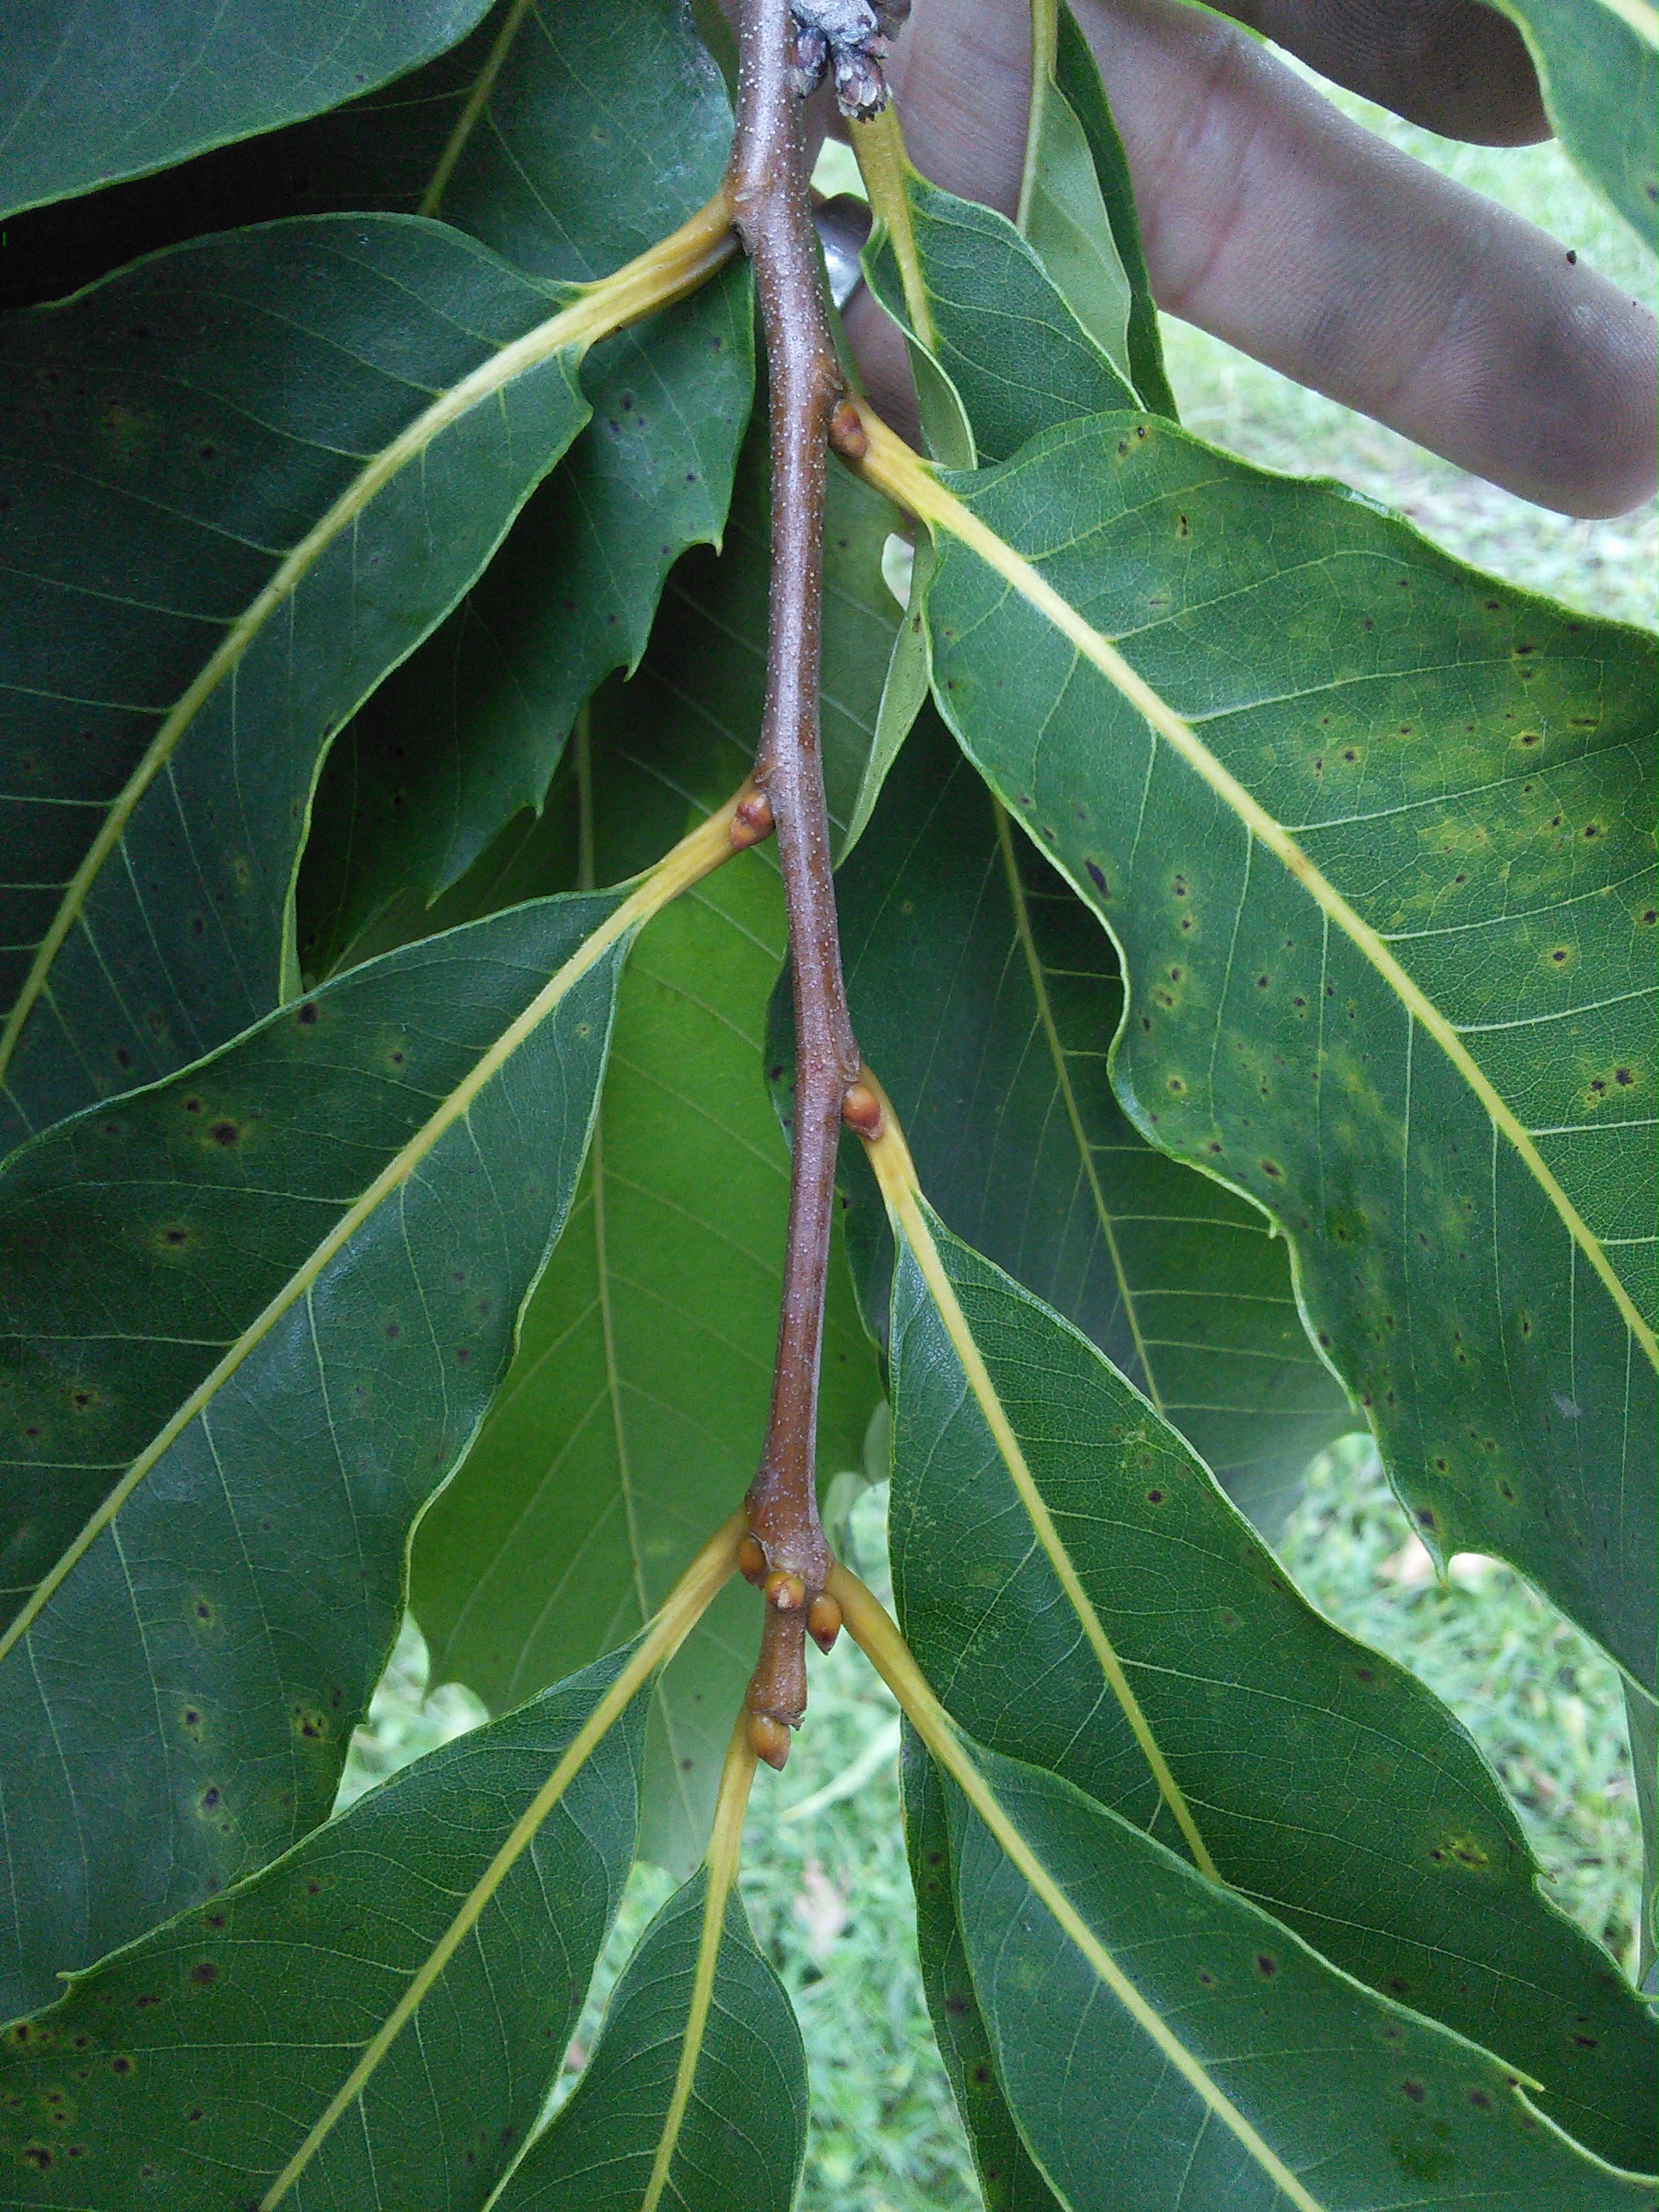 American chestnut twig